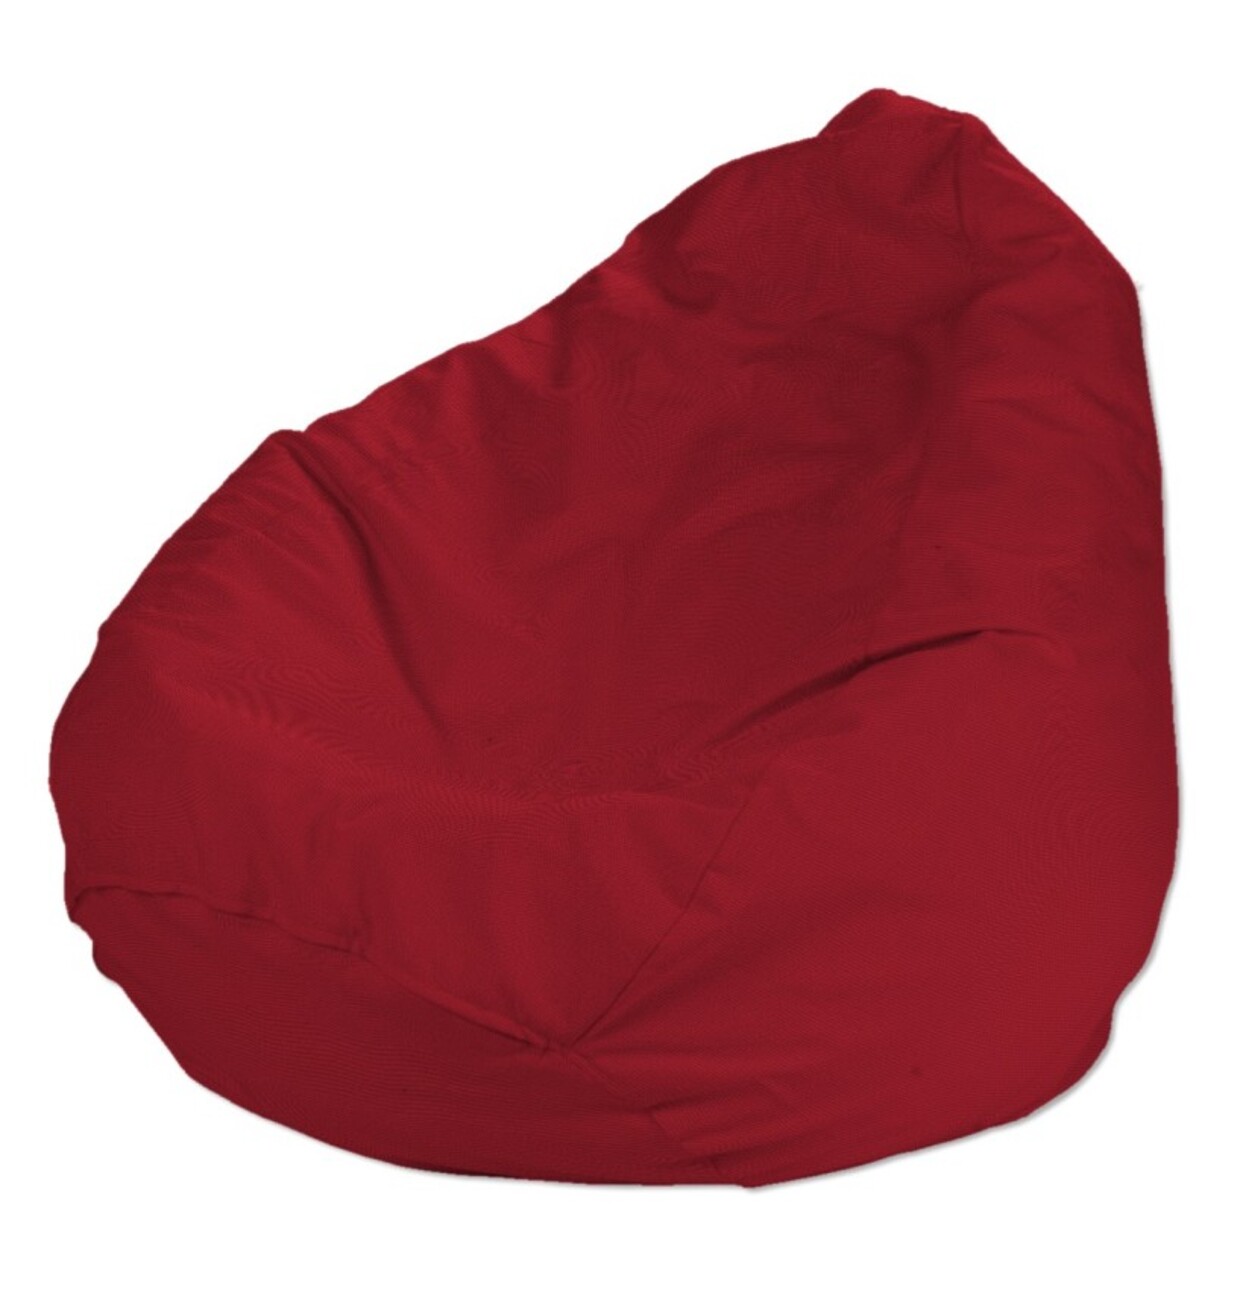 Bezug für Sitzsack, rot, Bezug für Sitzsack Ø50 x 85 cm, Etna (705-60) günstig online kaufen